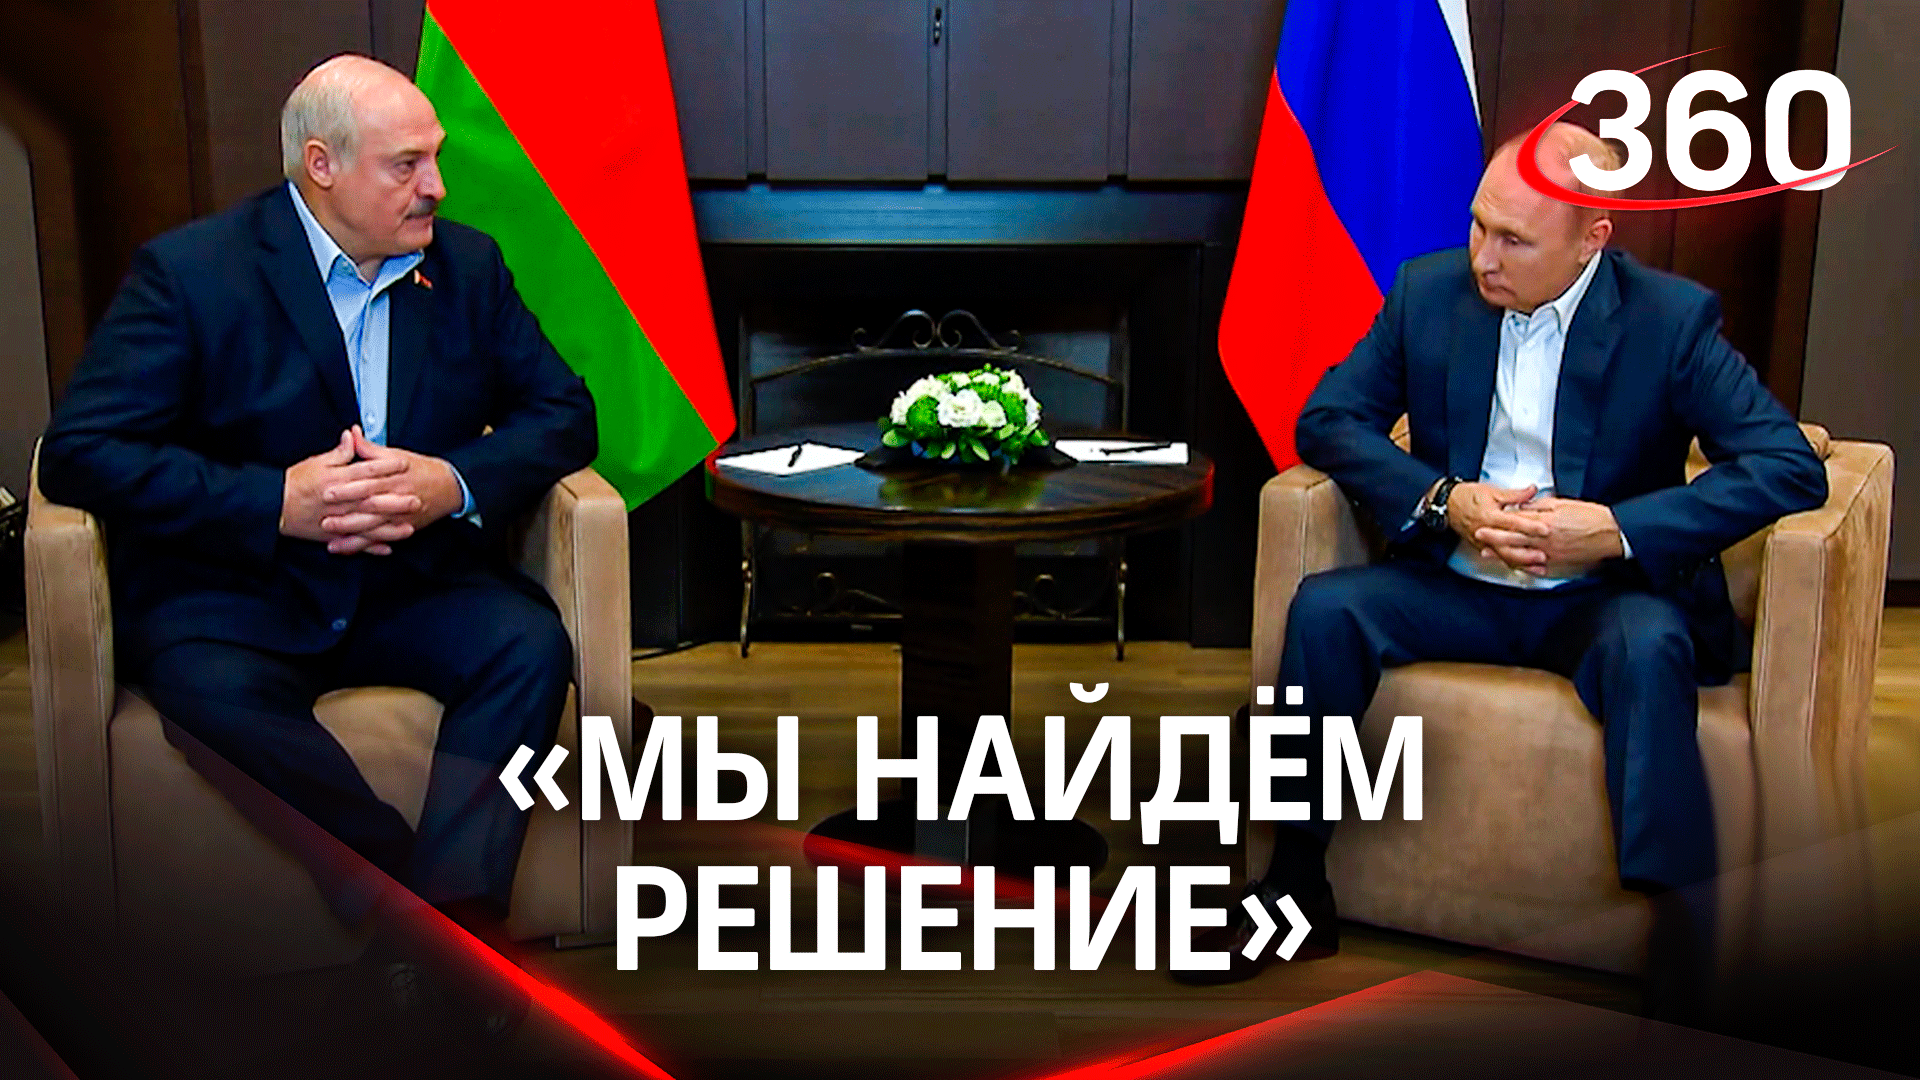 «Мы найдем решение» - Александр Лукашенко о победе в противостоянии санкциям Запада